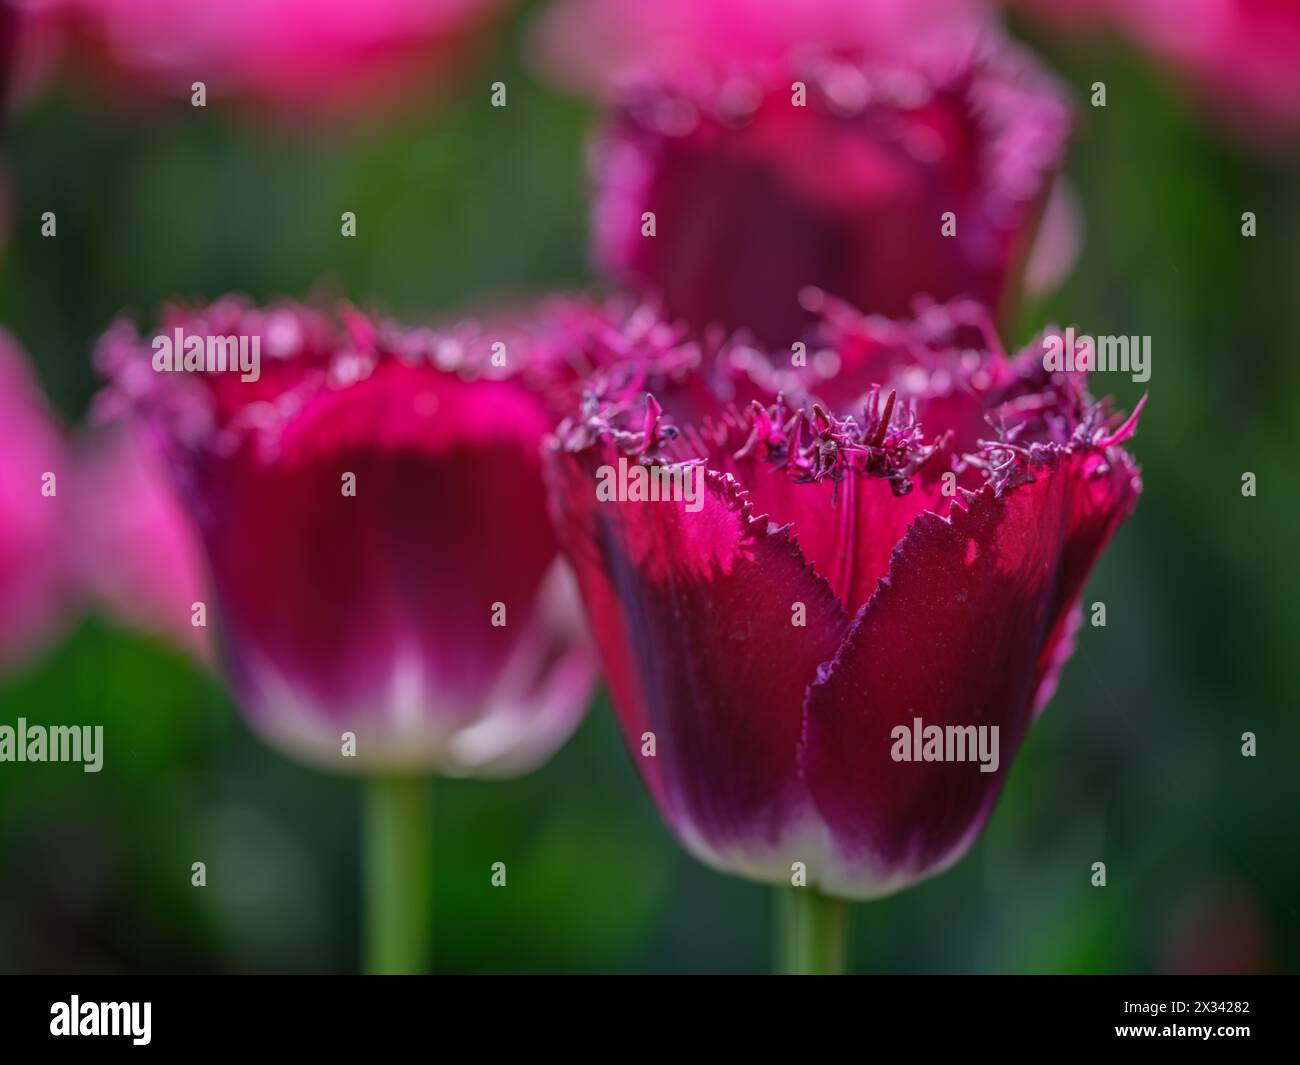 Colofrul farbenfrohe Tulpe aus nächster Nähe Stockfoto